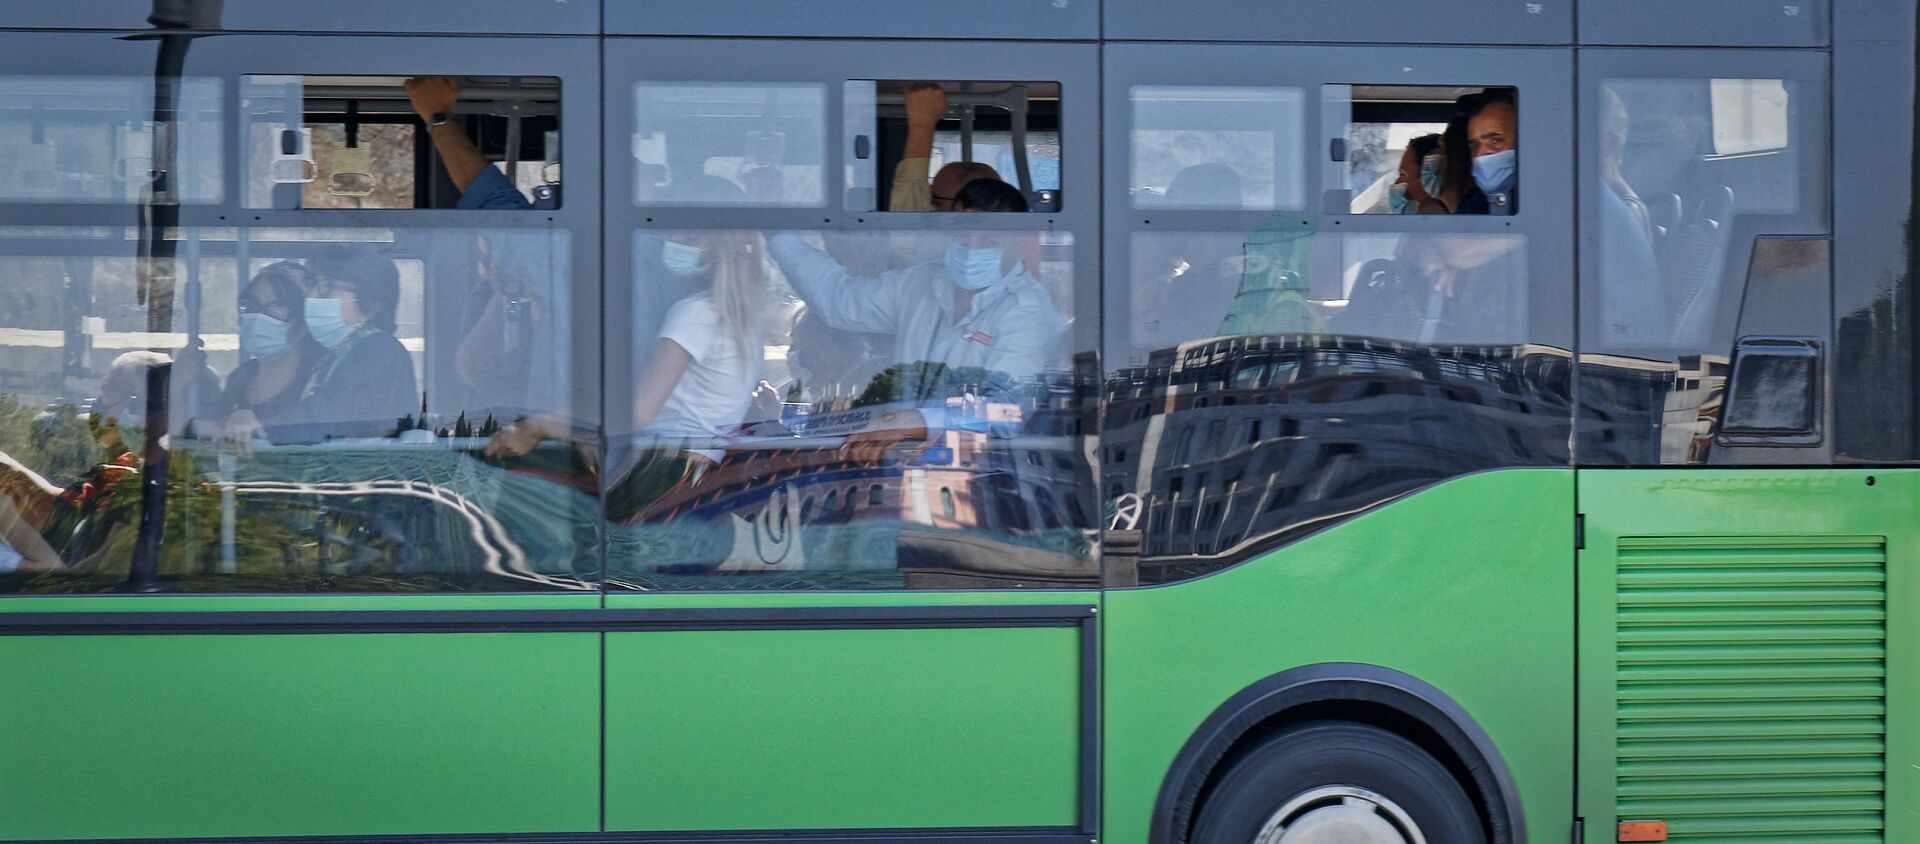 Коронавирус в Грузии - пассажиры в автобусе в масках - Sputnik Грузия, 1920, 13.05.2021